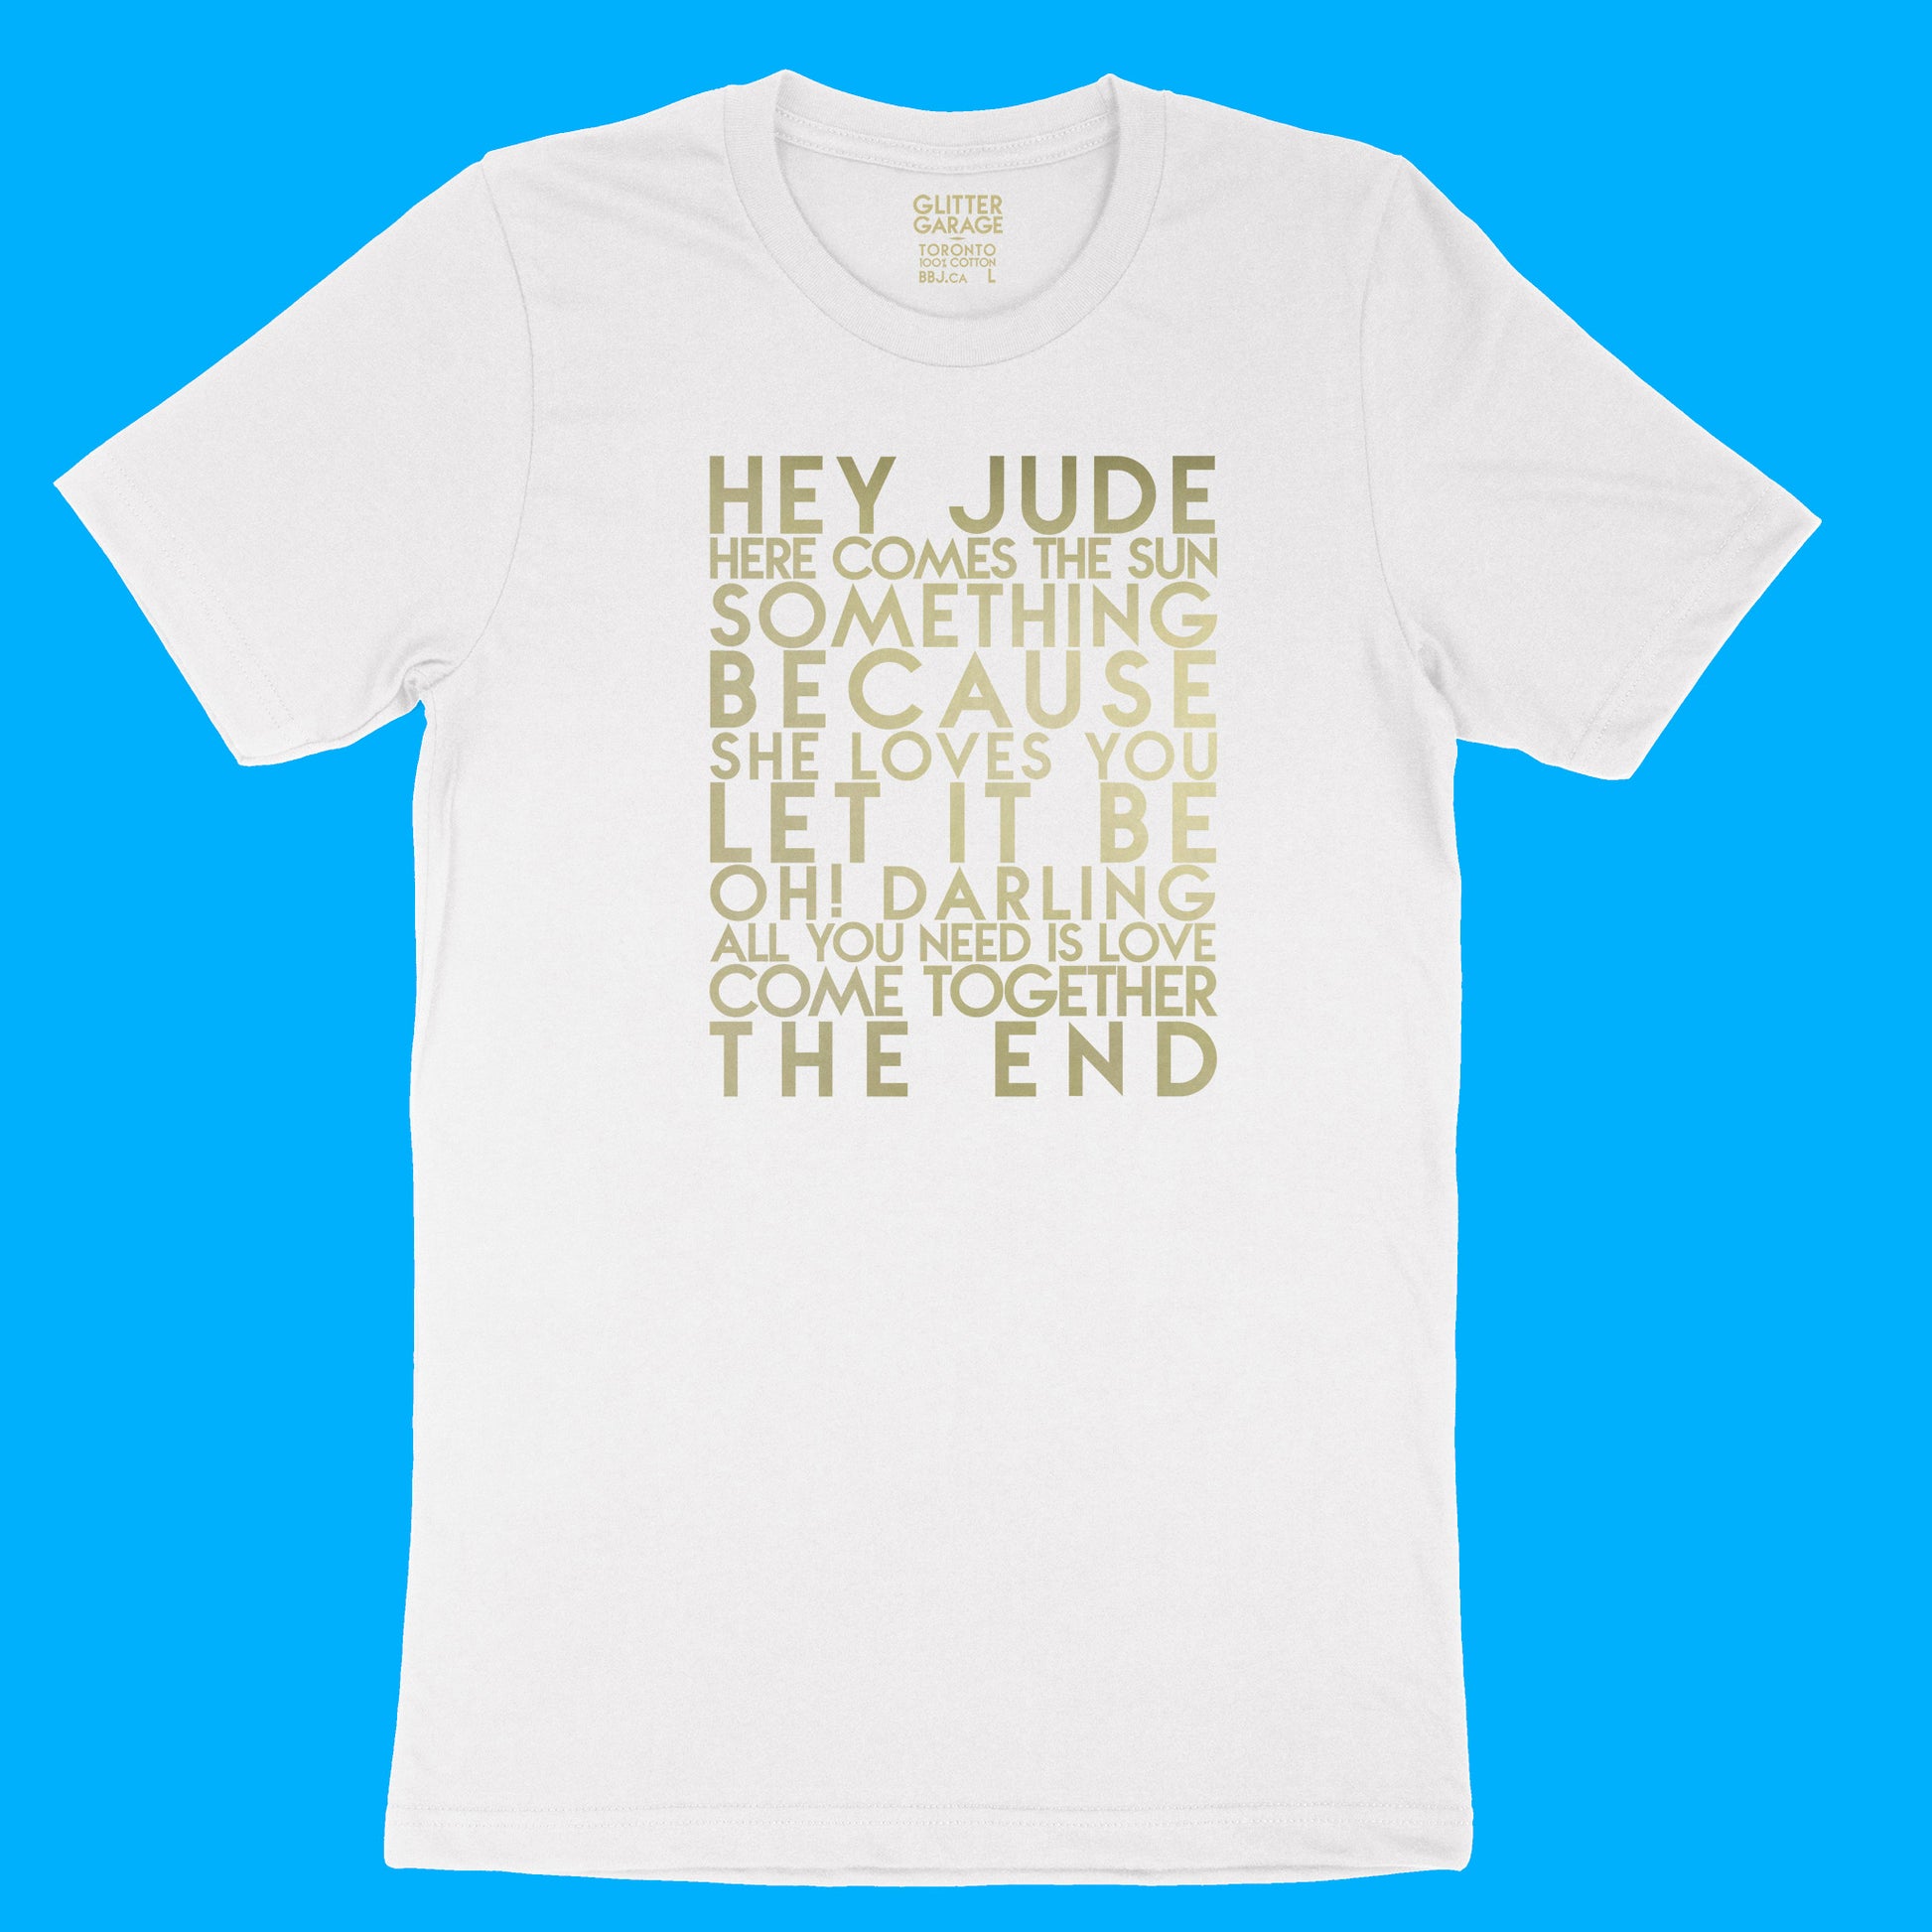 Beatles songs YourTen custom sample - gold matte text on white unisex t-shirt -  by BBJ / Glitter Garage